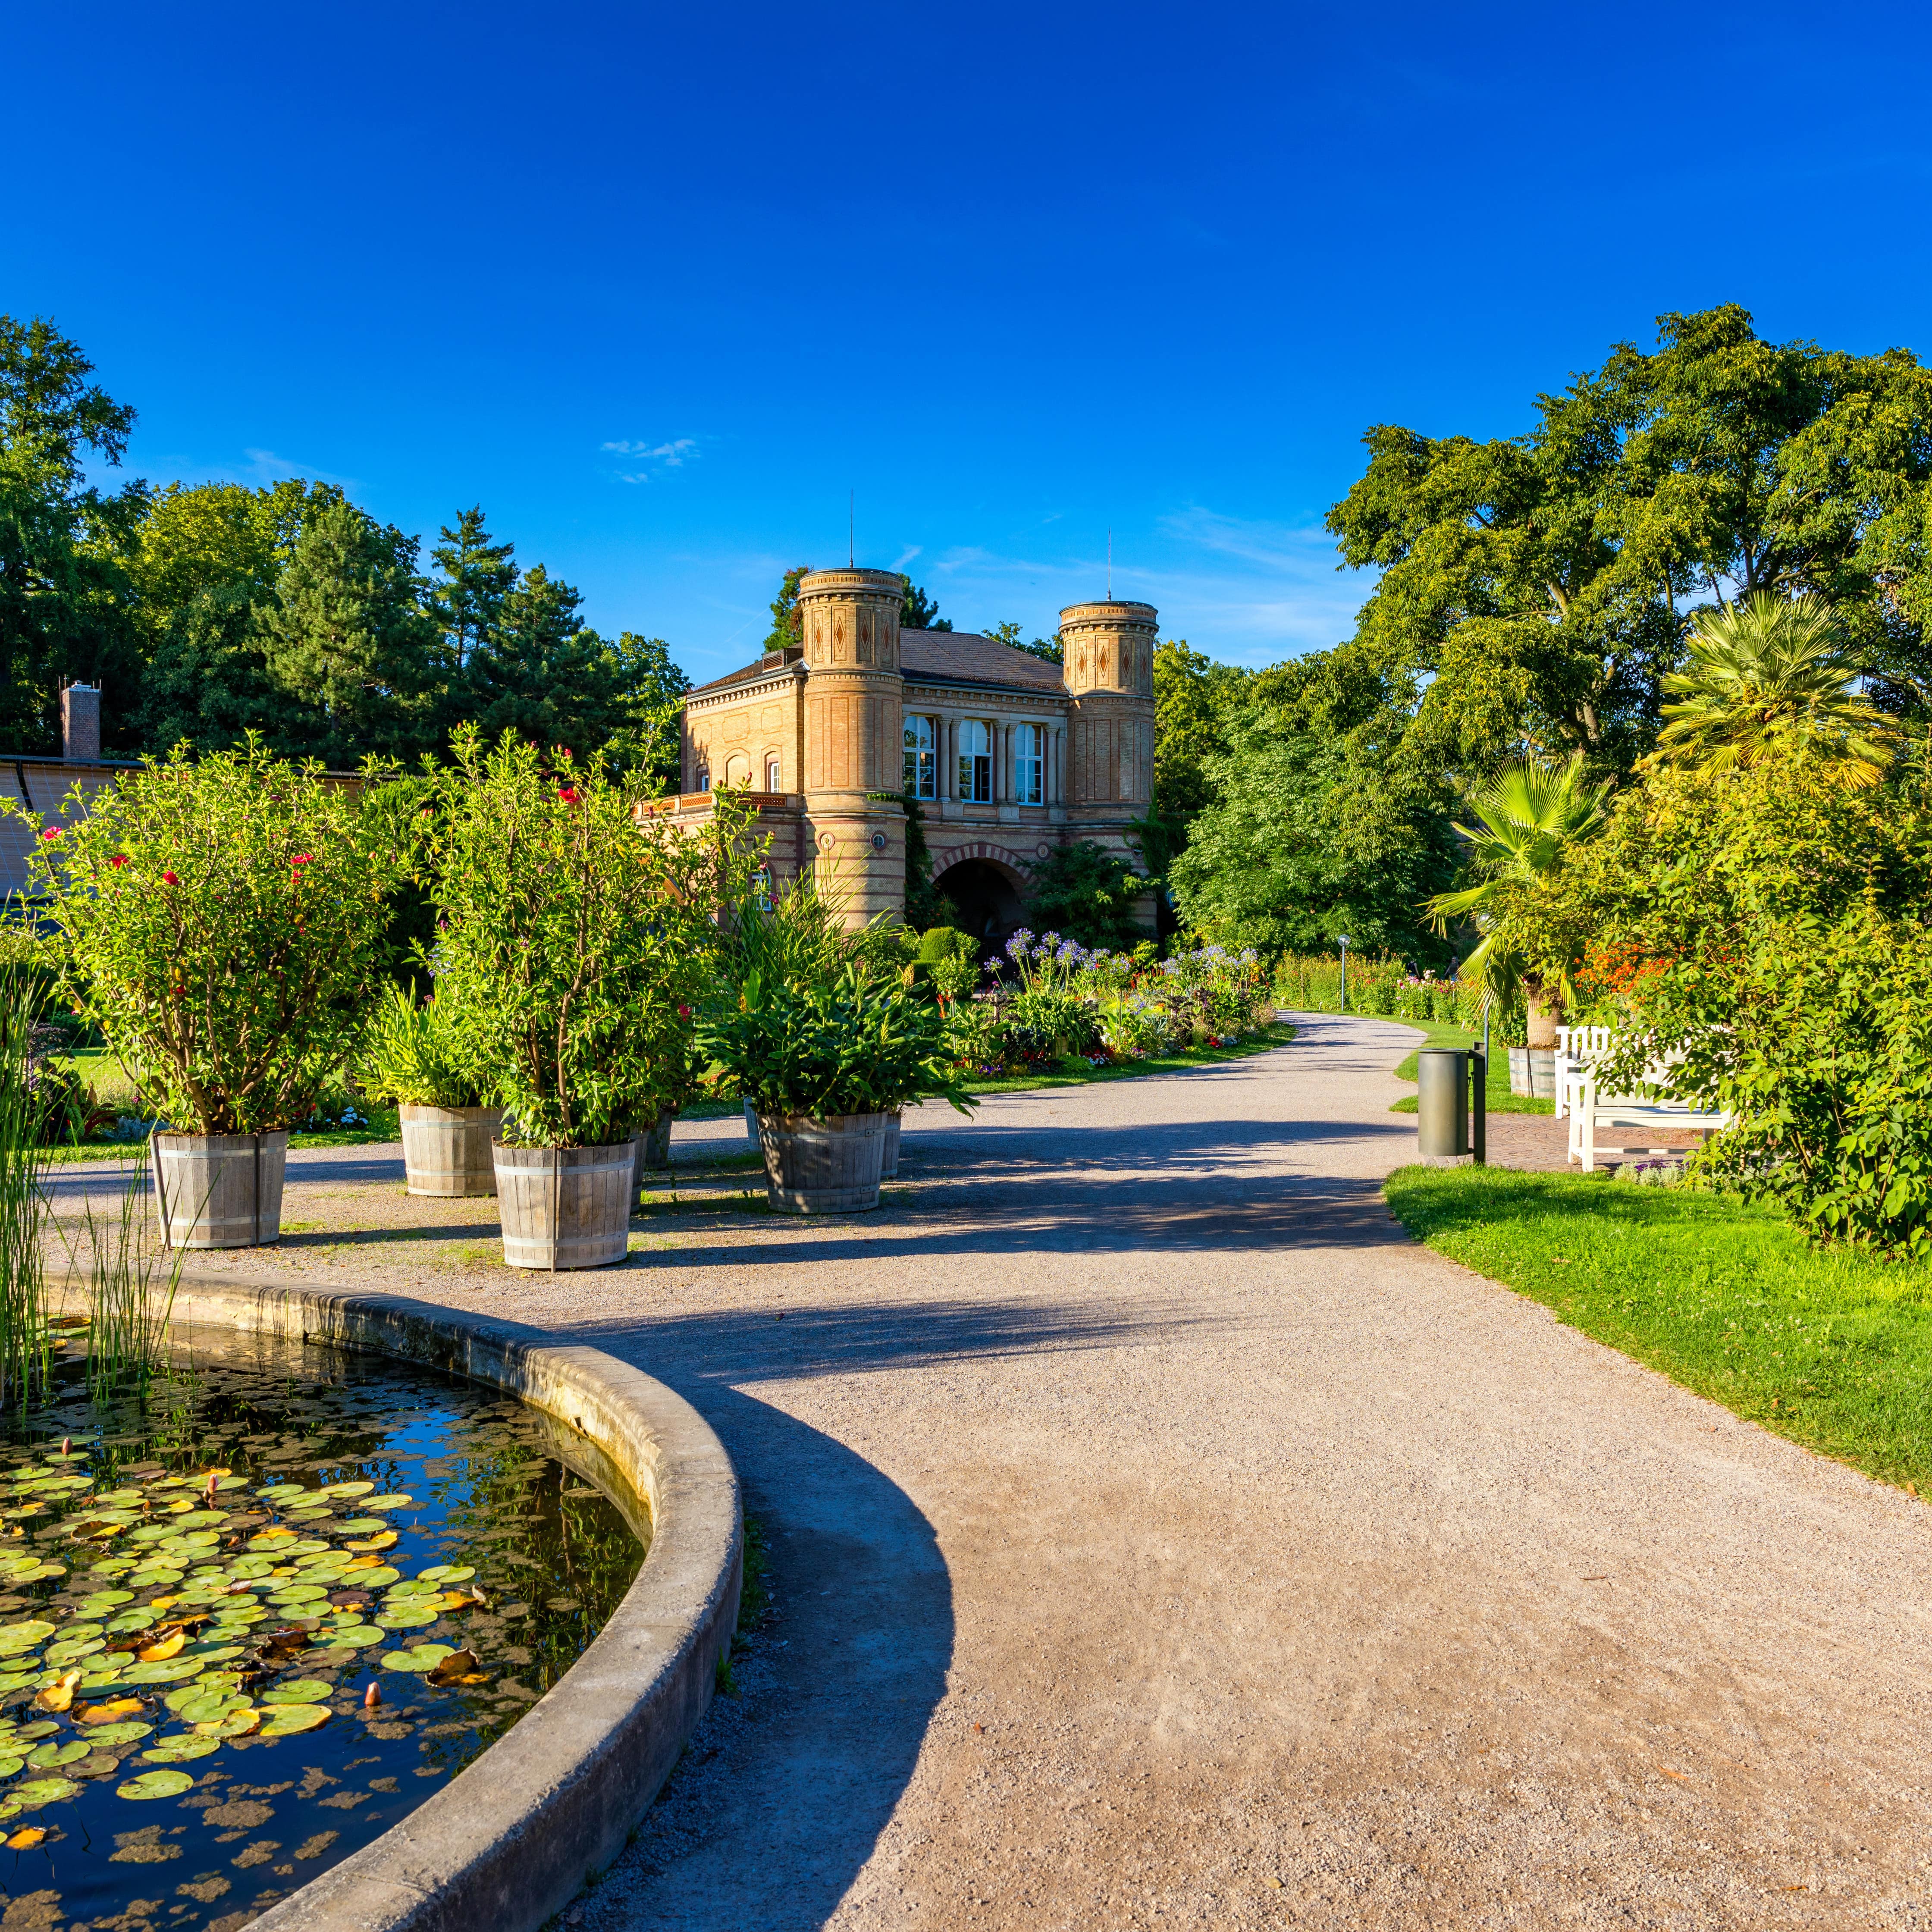 Ein Spazierweg im Botanischen Garten, links ein Teich mit Pflanzen, geradezu Büsche in Eimern, im Hintergrund ein Gebäude.